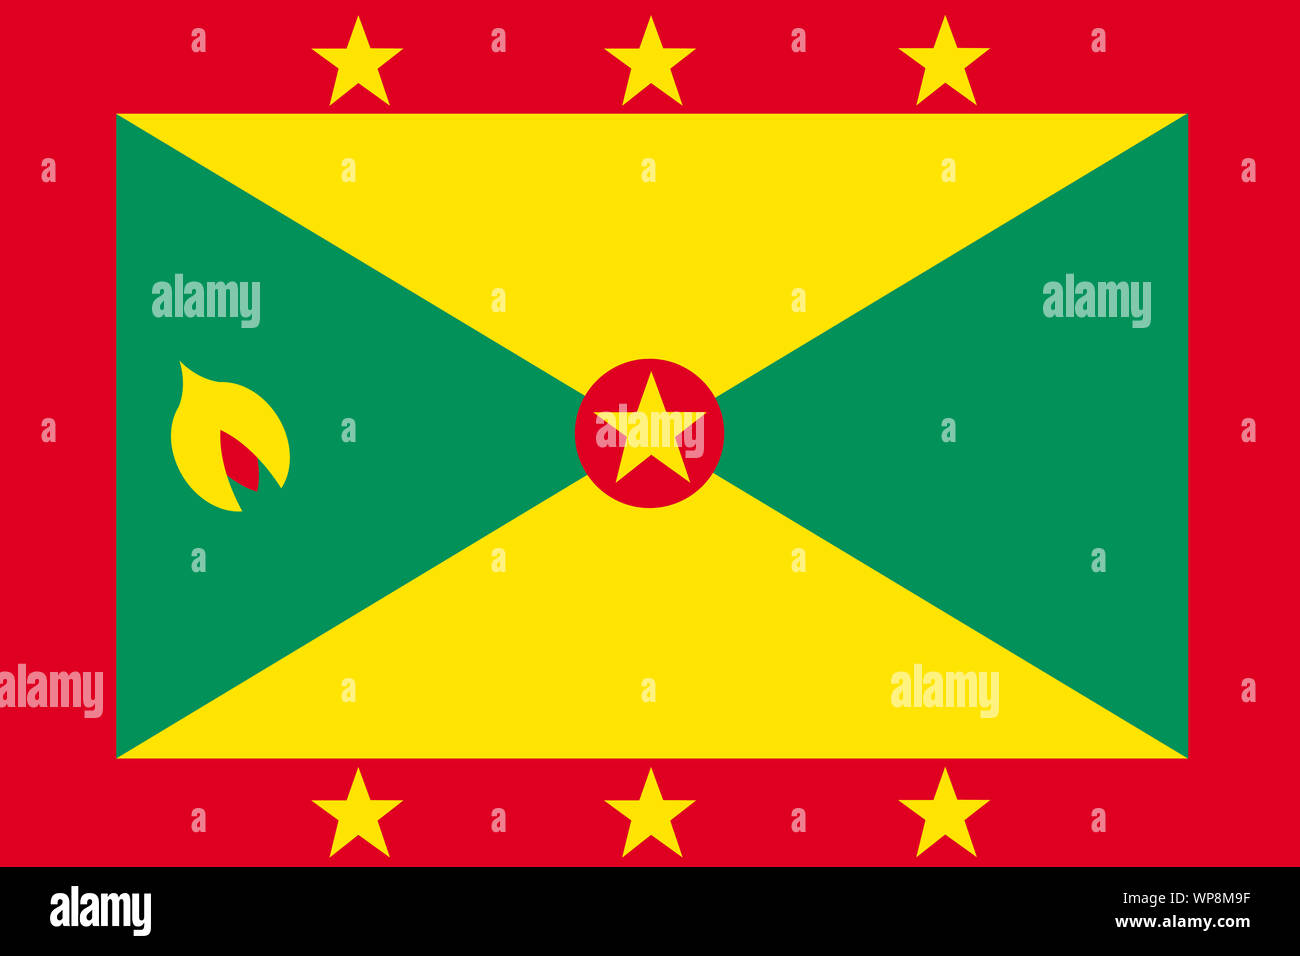 Une grenade background illustration drapeau rouge vert Étoile Banque D'Images